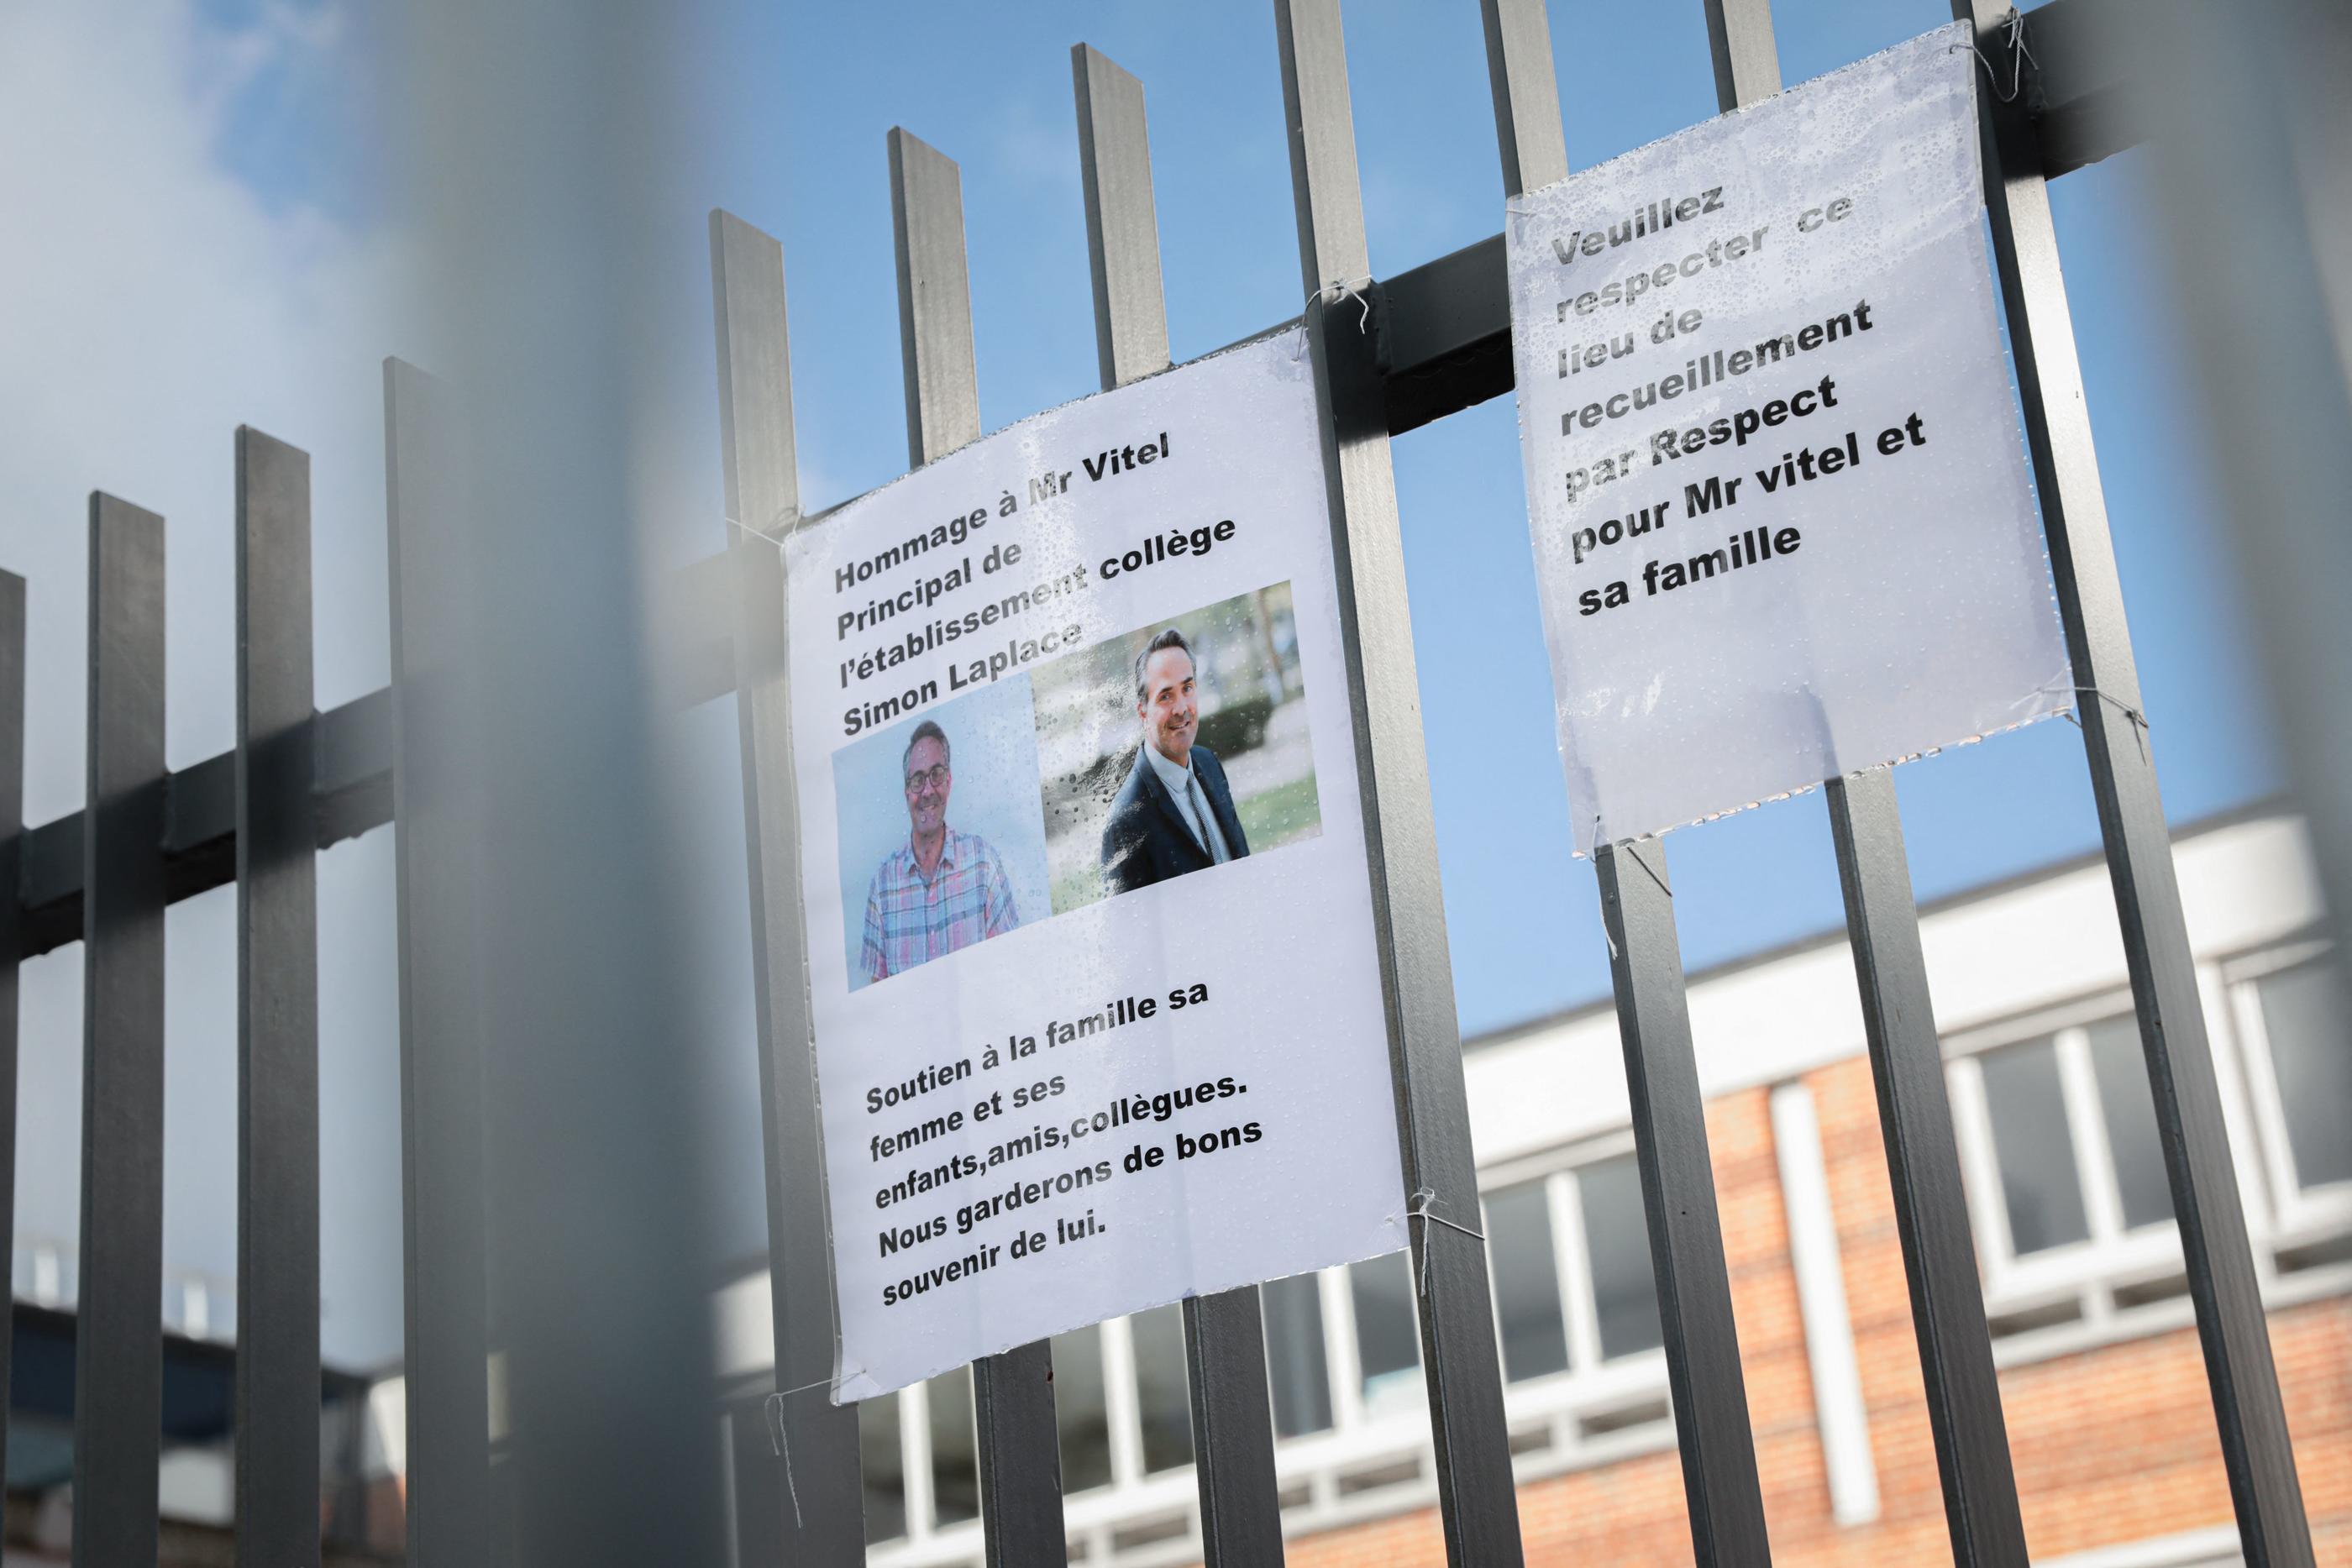 Sétphane Vitel, principal d'un collège de Lisieux, est mort après avoir reçu une alarme intrusion dans l'enceinte de son établissement. AFP/Lou Benoist